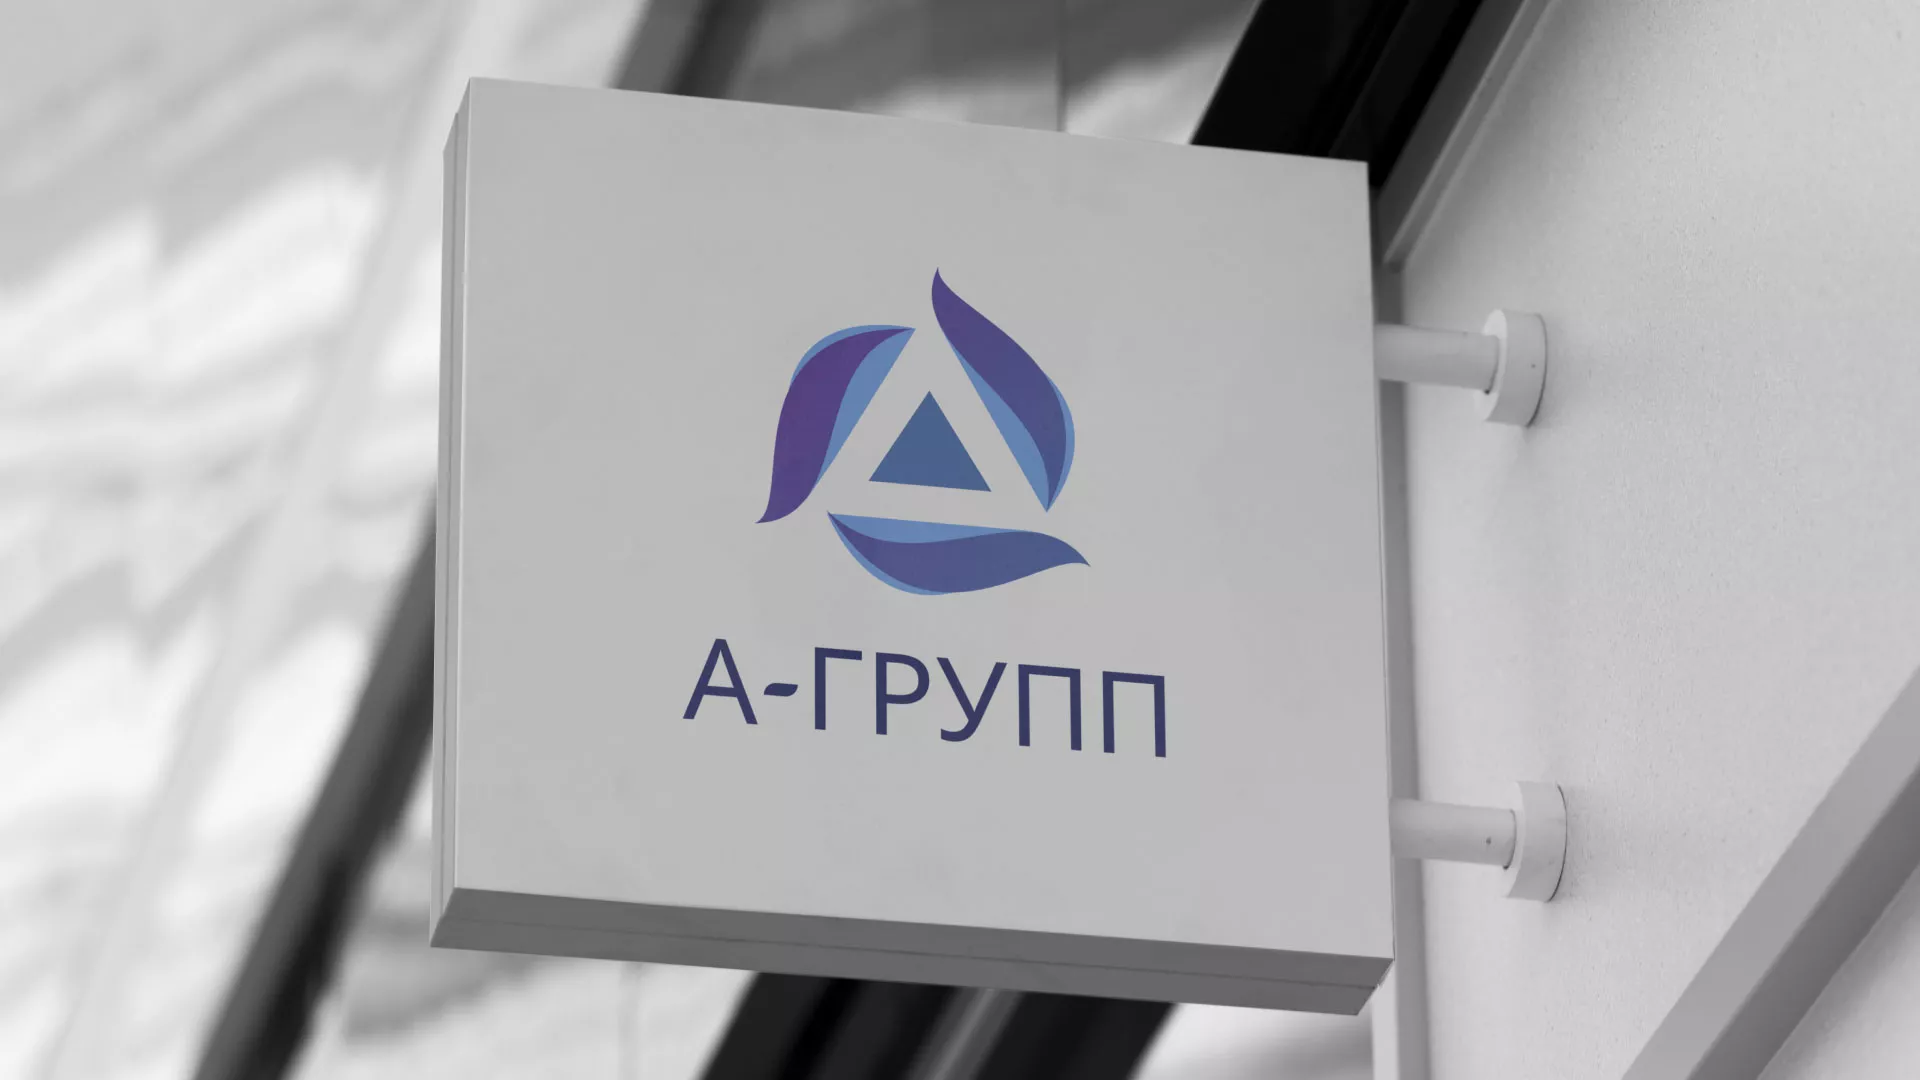 Создание логотипа компании «А-ГРУПП» в Юхнове